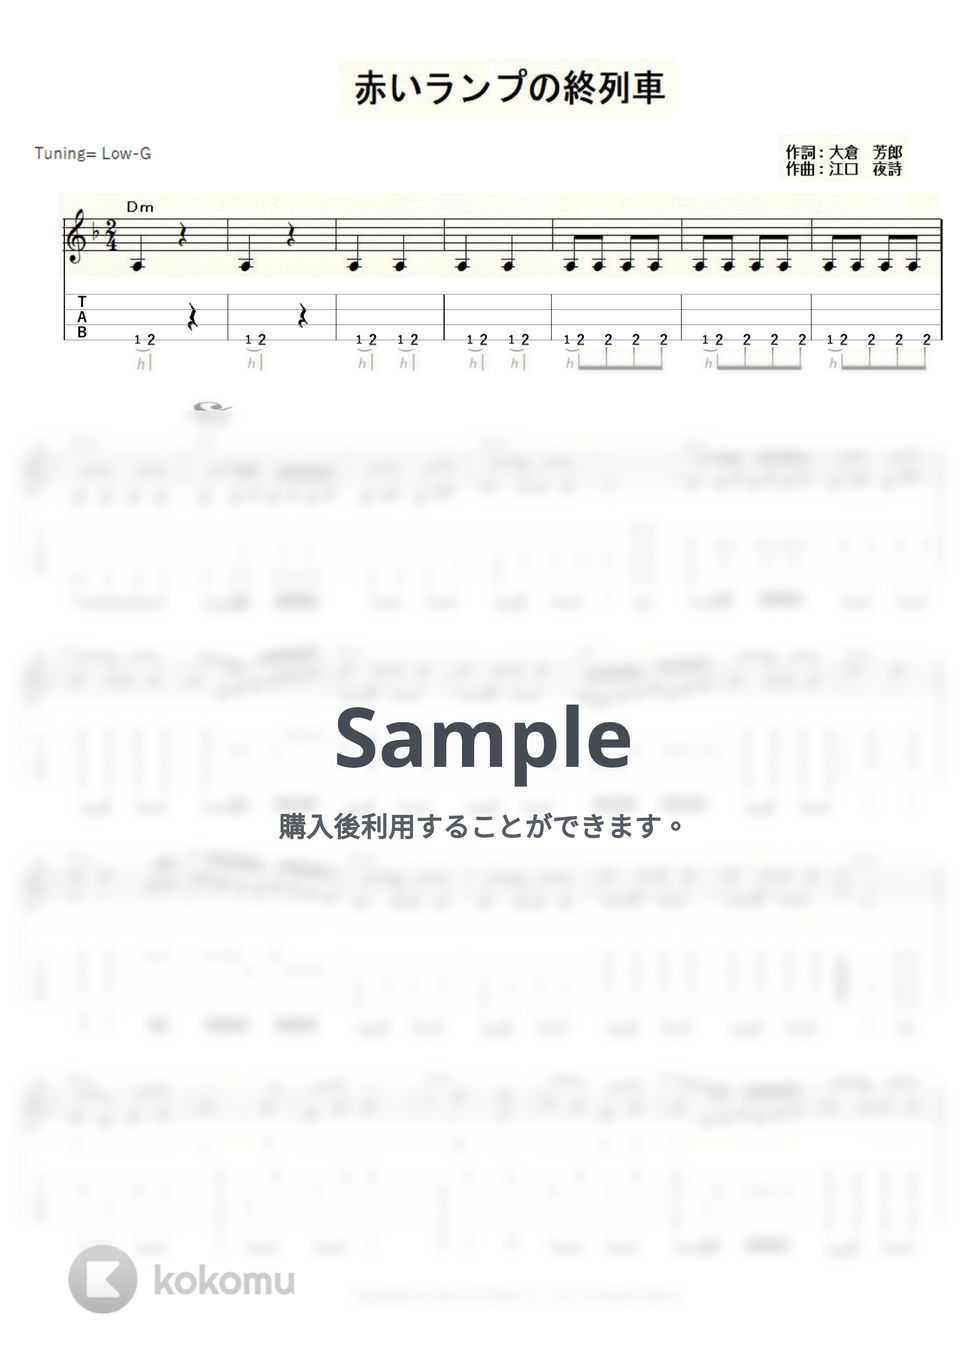 春日八郎 - 赤いランプの終列車 (ｳｸﾚﾚｿﾛ/Low-G/中級～上級) by ukulelepapa